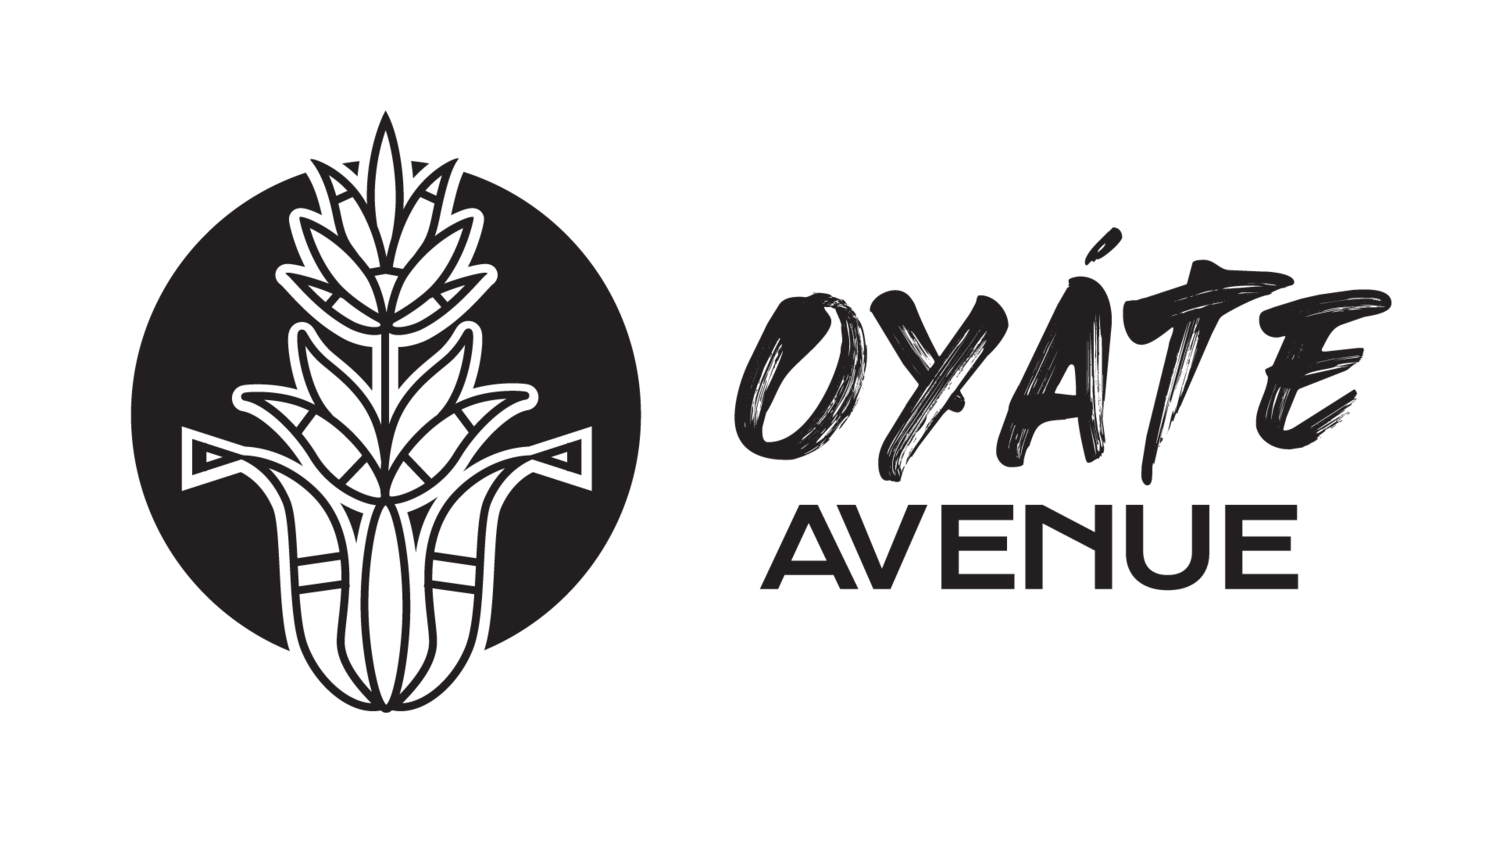 Oyáte Avenue